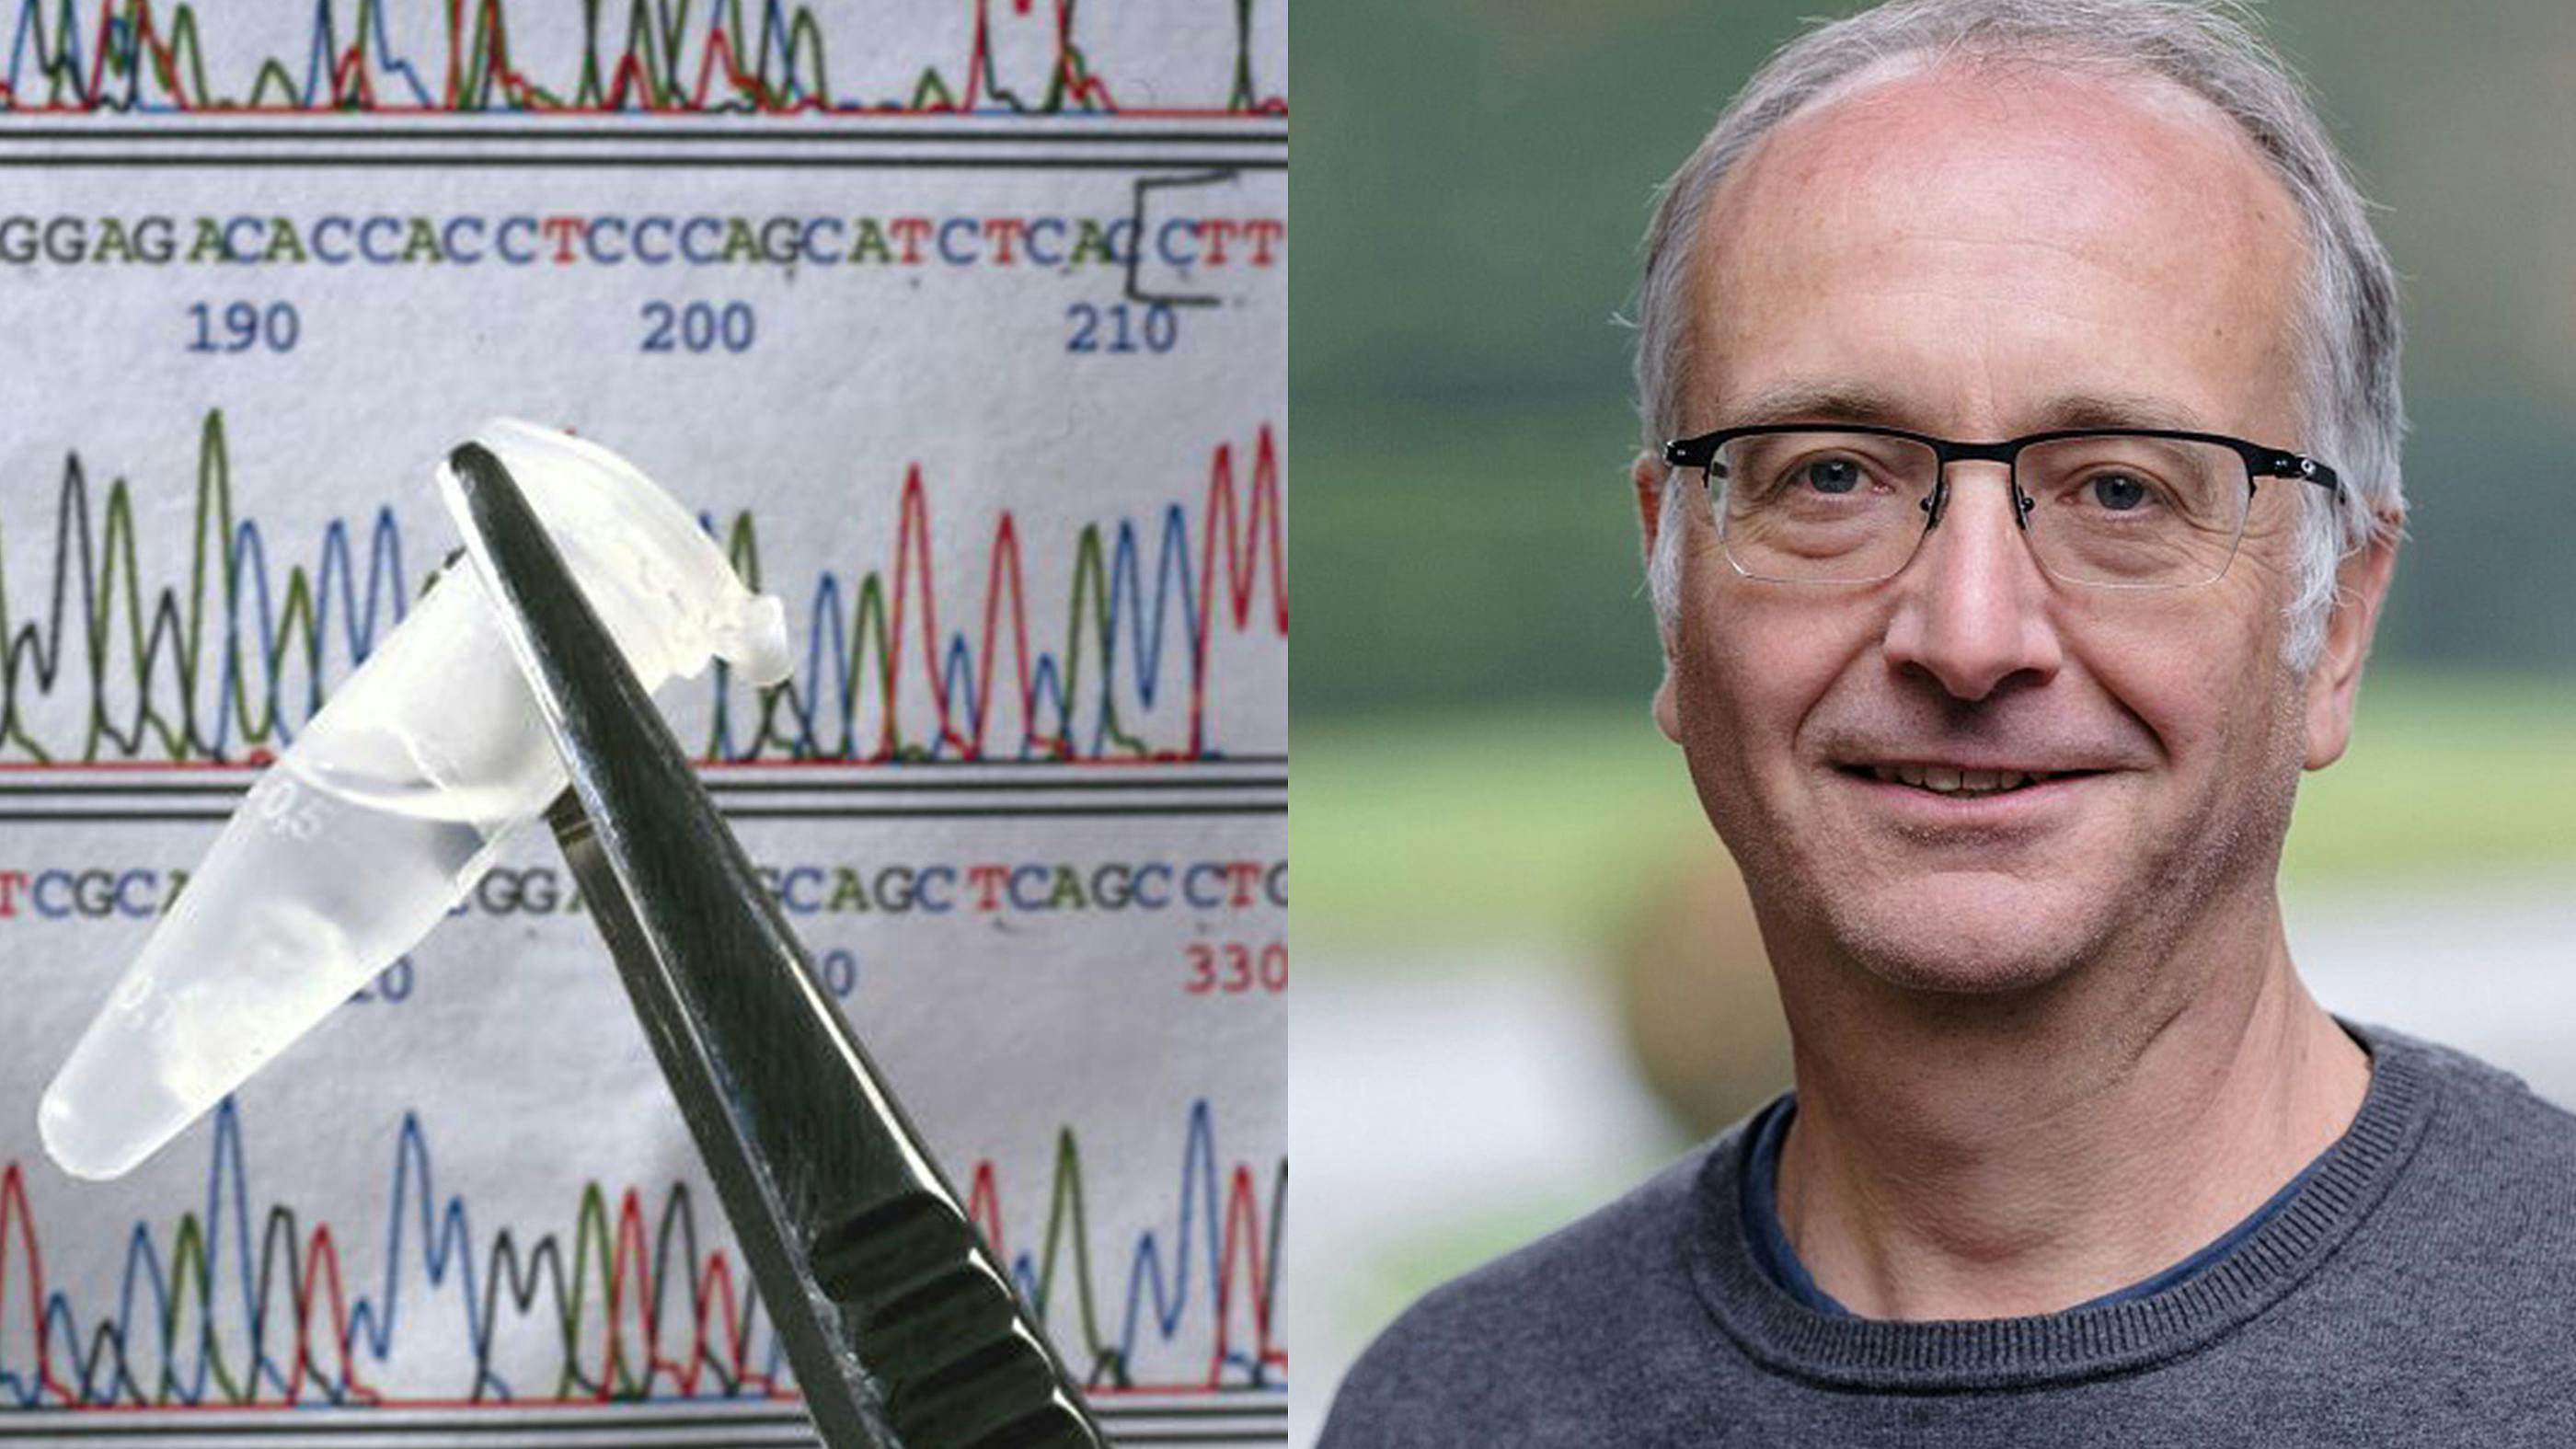 Links sieht man eine DNA-Sequenzierung mit einer Pinzette, die einen Flüssigkeitsbehälter hält, daran angegliedert den Experten aus dem Interview, den Forscher Prof. Friedemann Weber von der Uni Gießen.